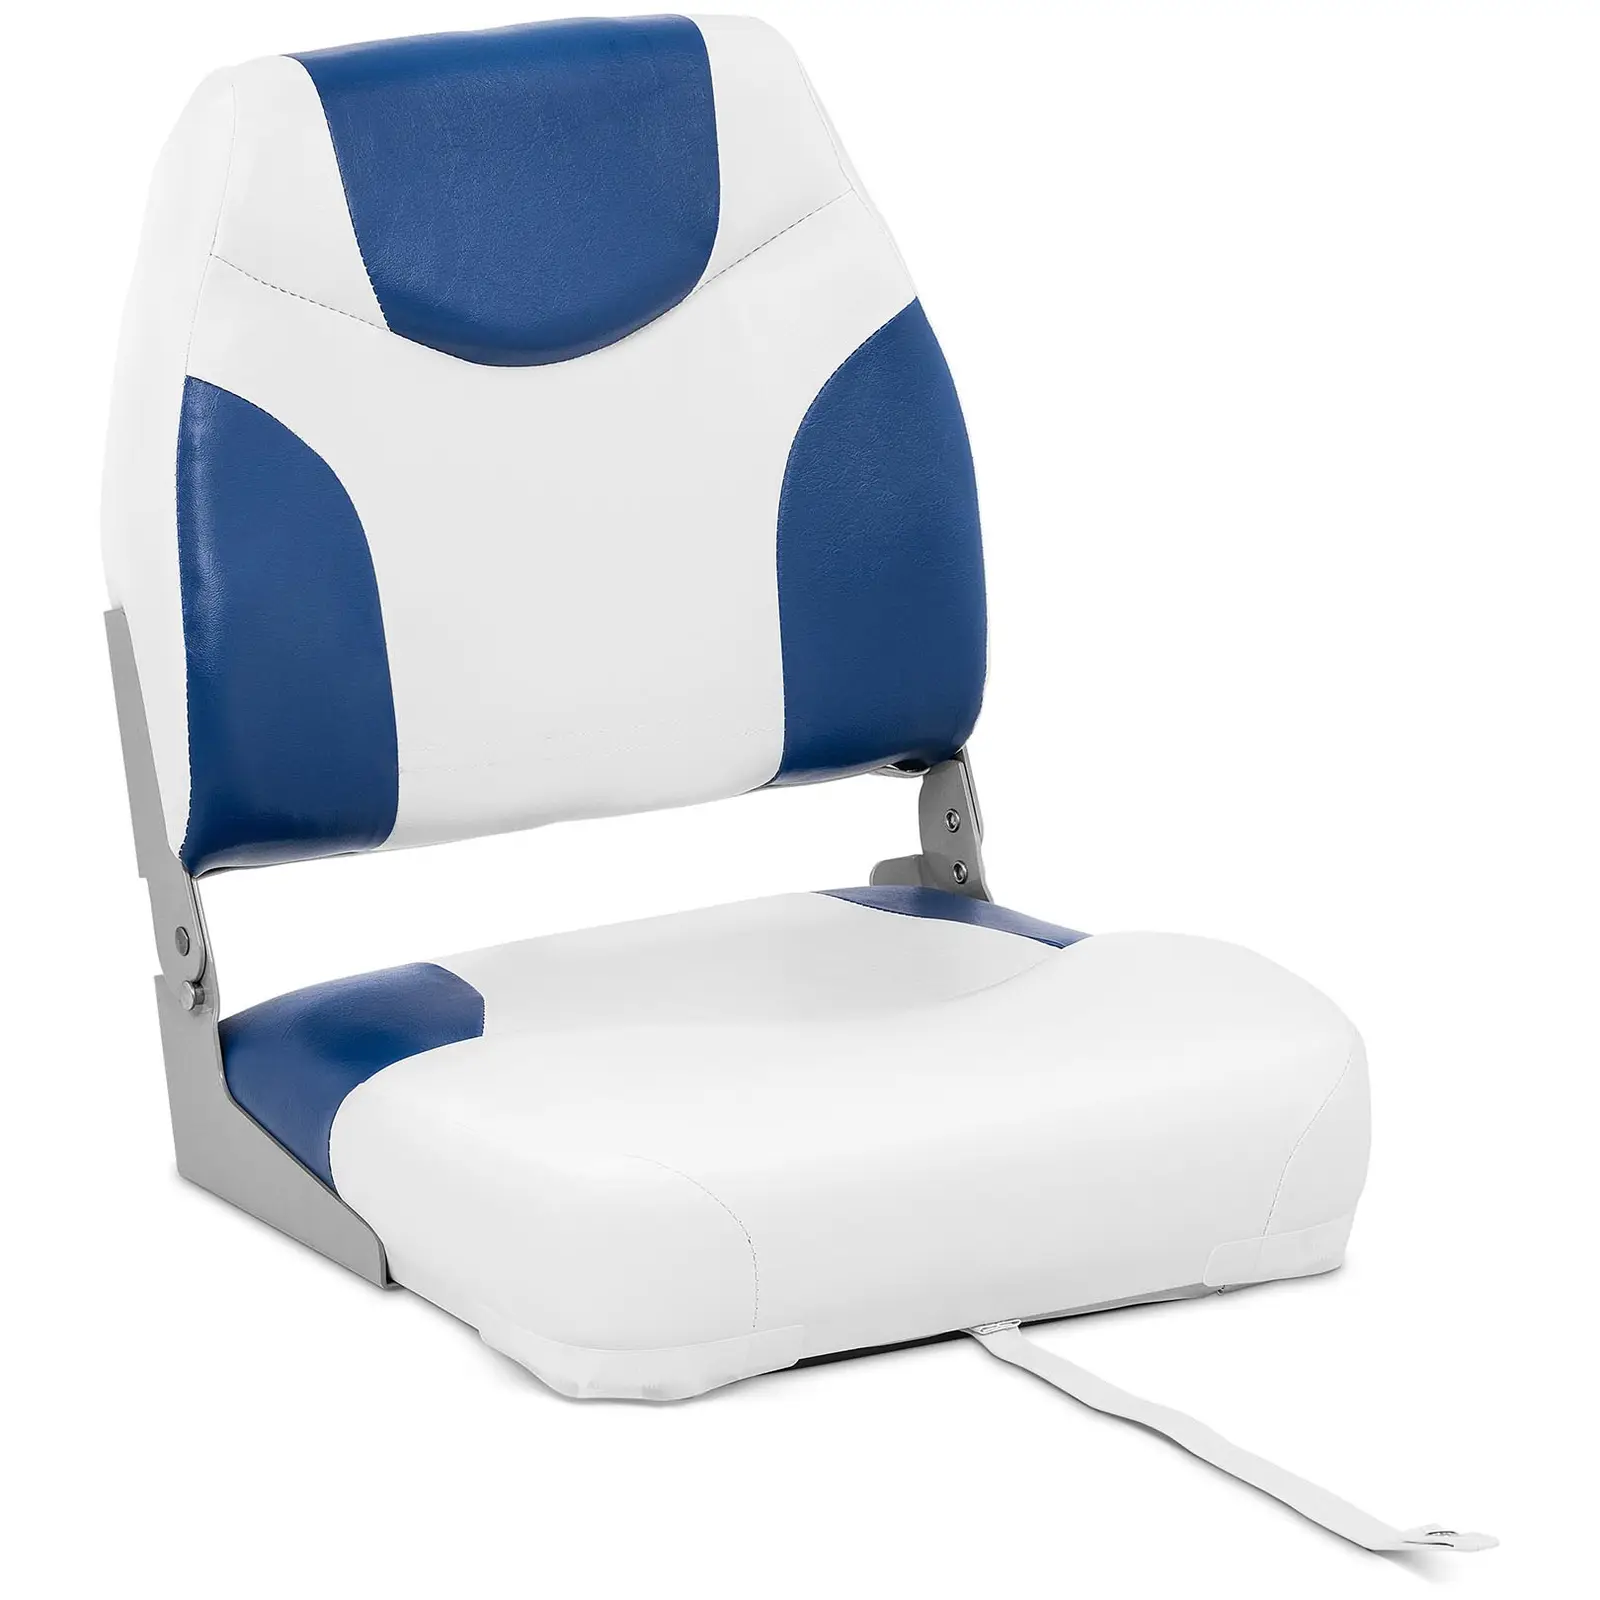 Bootssitz - 42 x 50 x 51 cm - Blau, Weiß